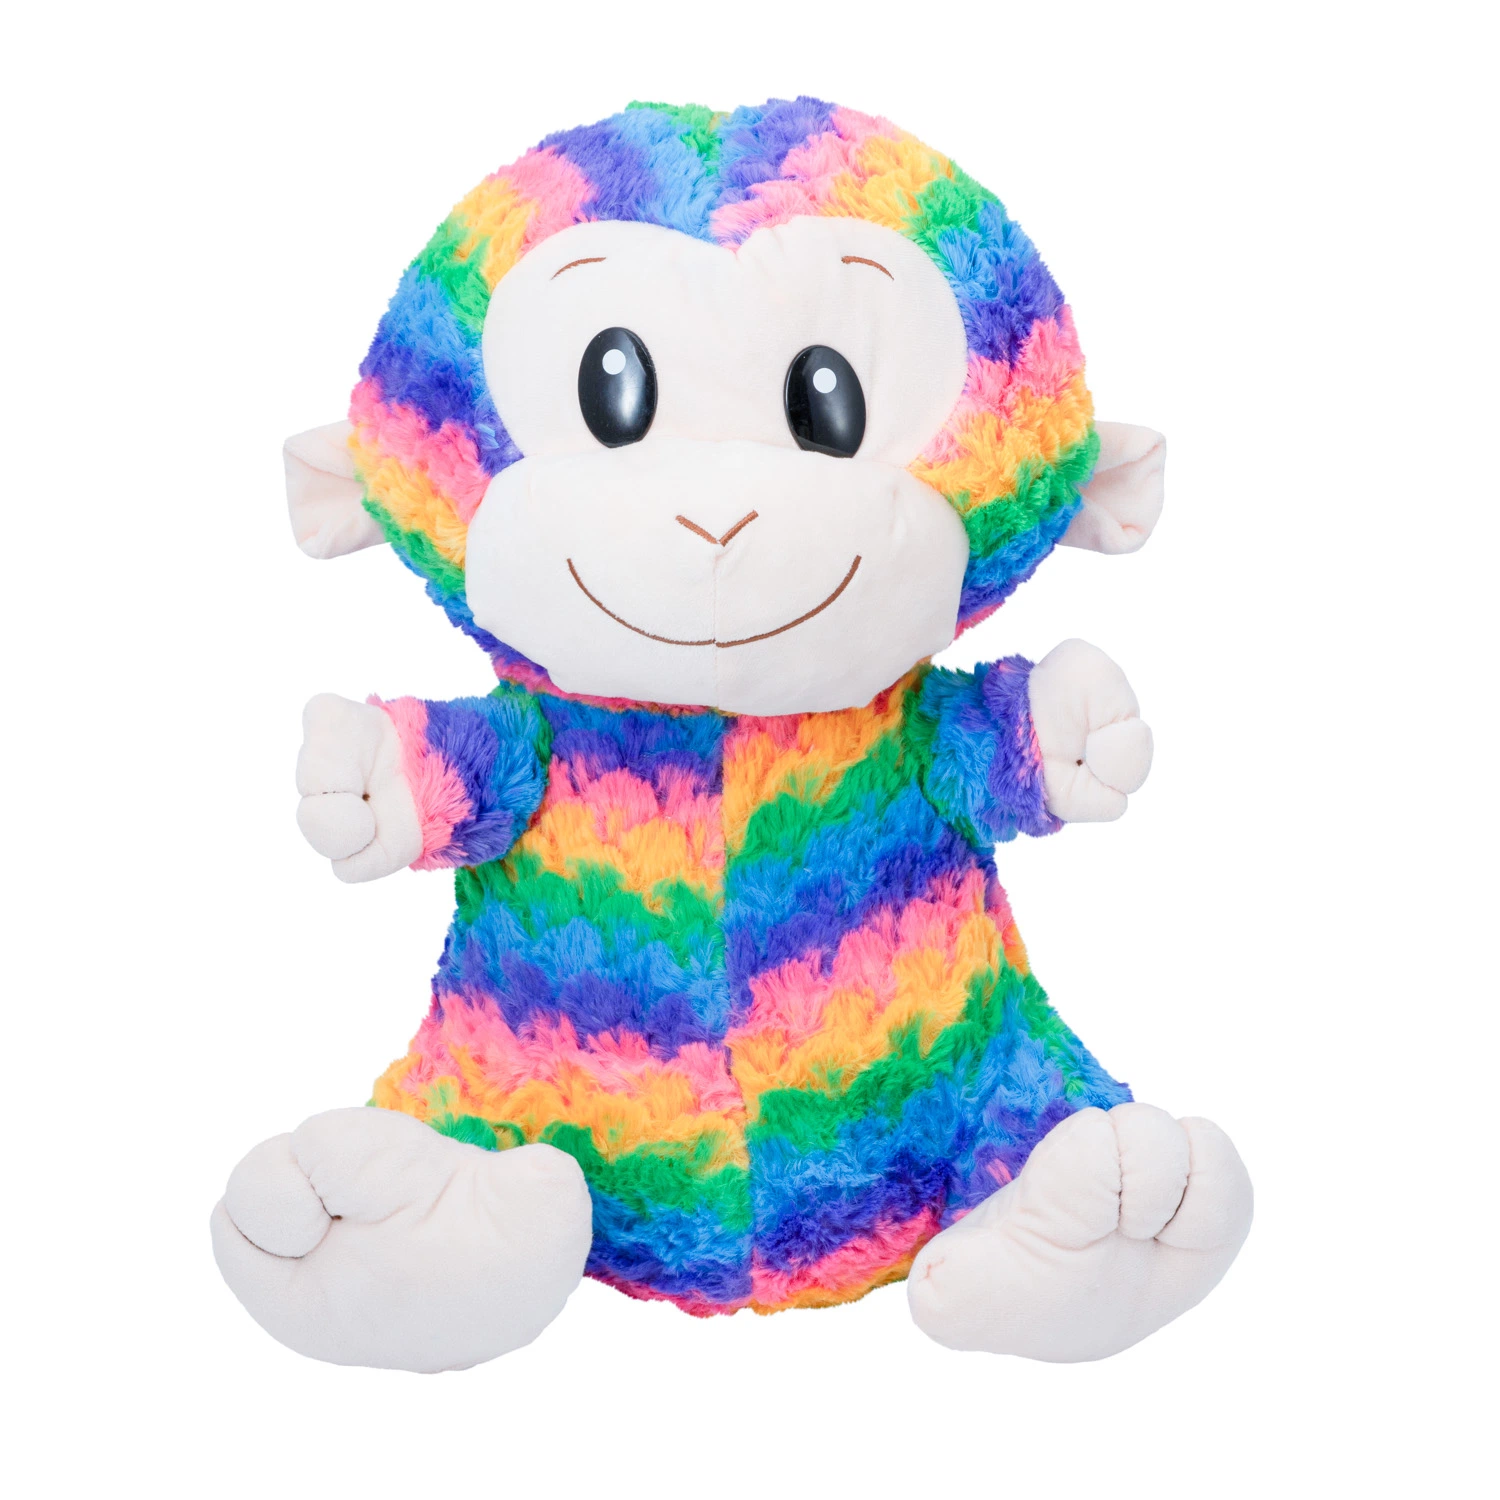 Peluche macio bebé brinquedo de brincar, o macaco bonito arco-íris